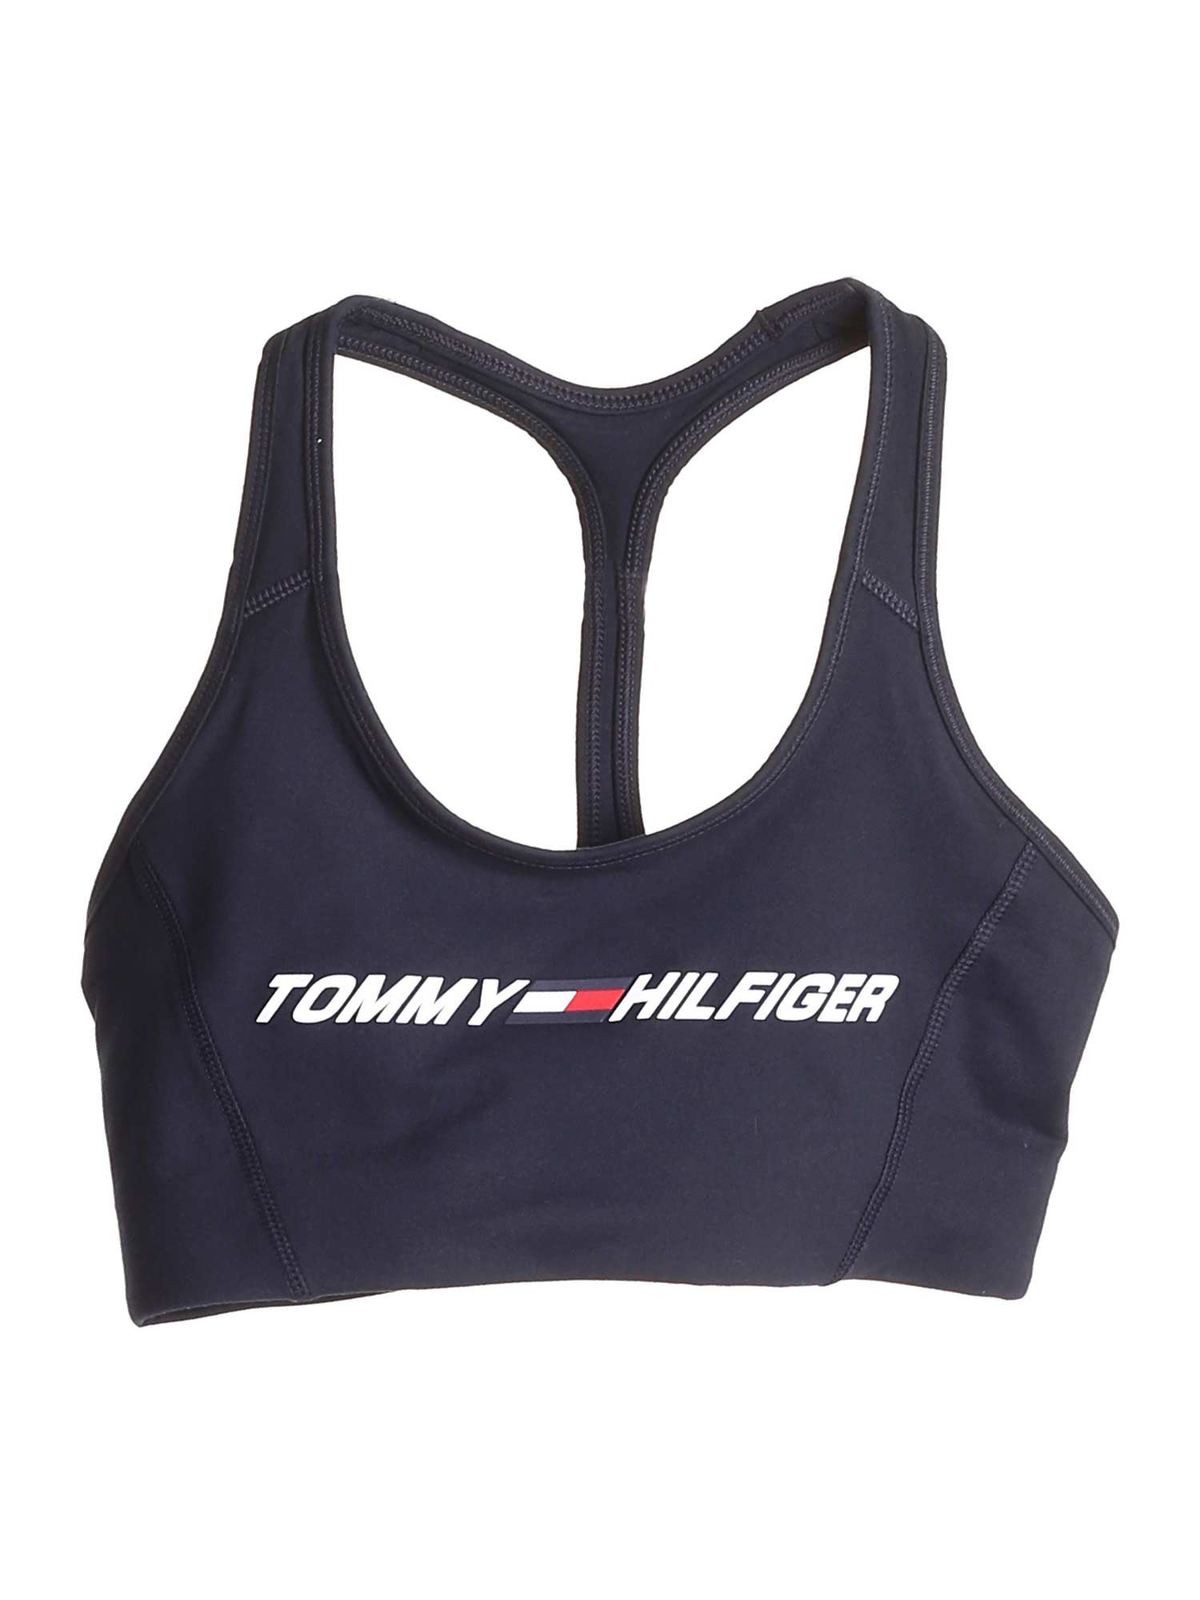 Tommy Hilfiger sports bra blue Black on SALE